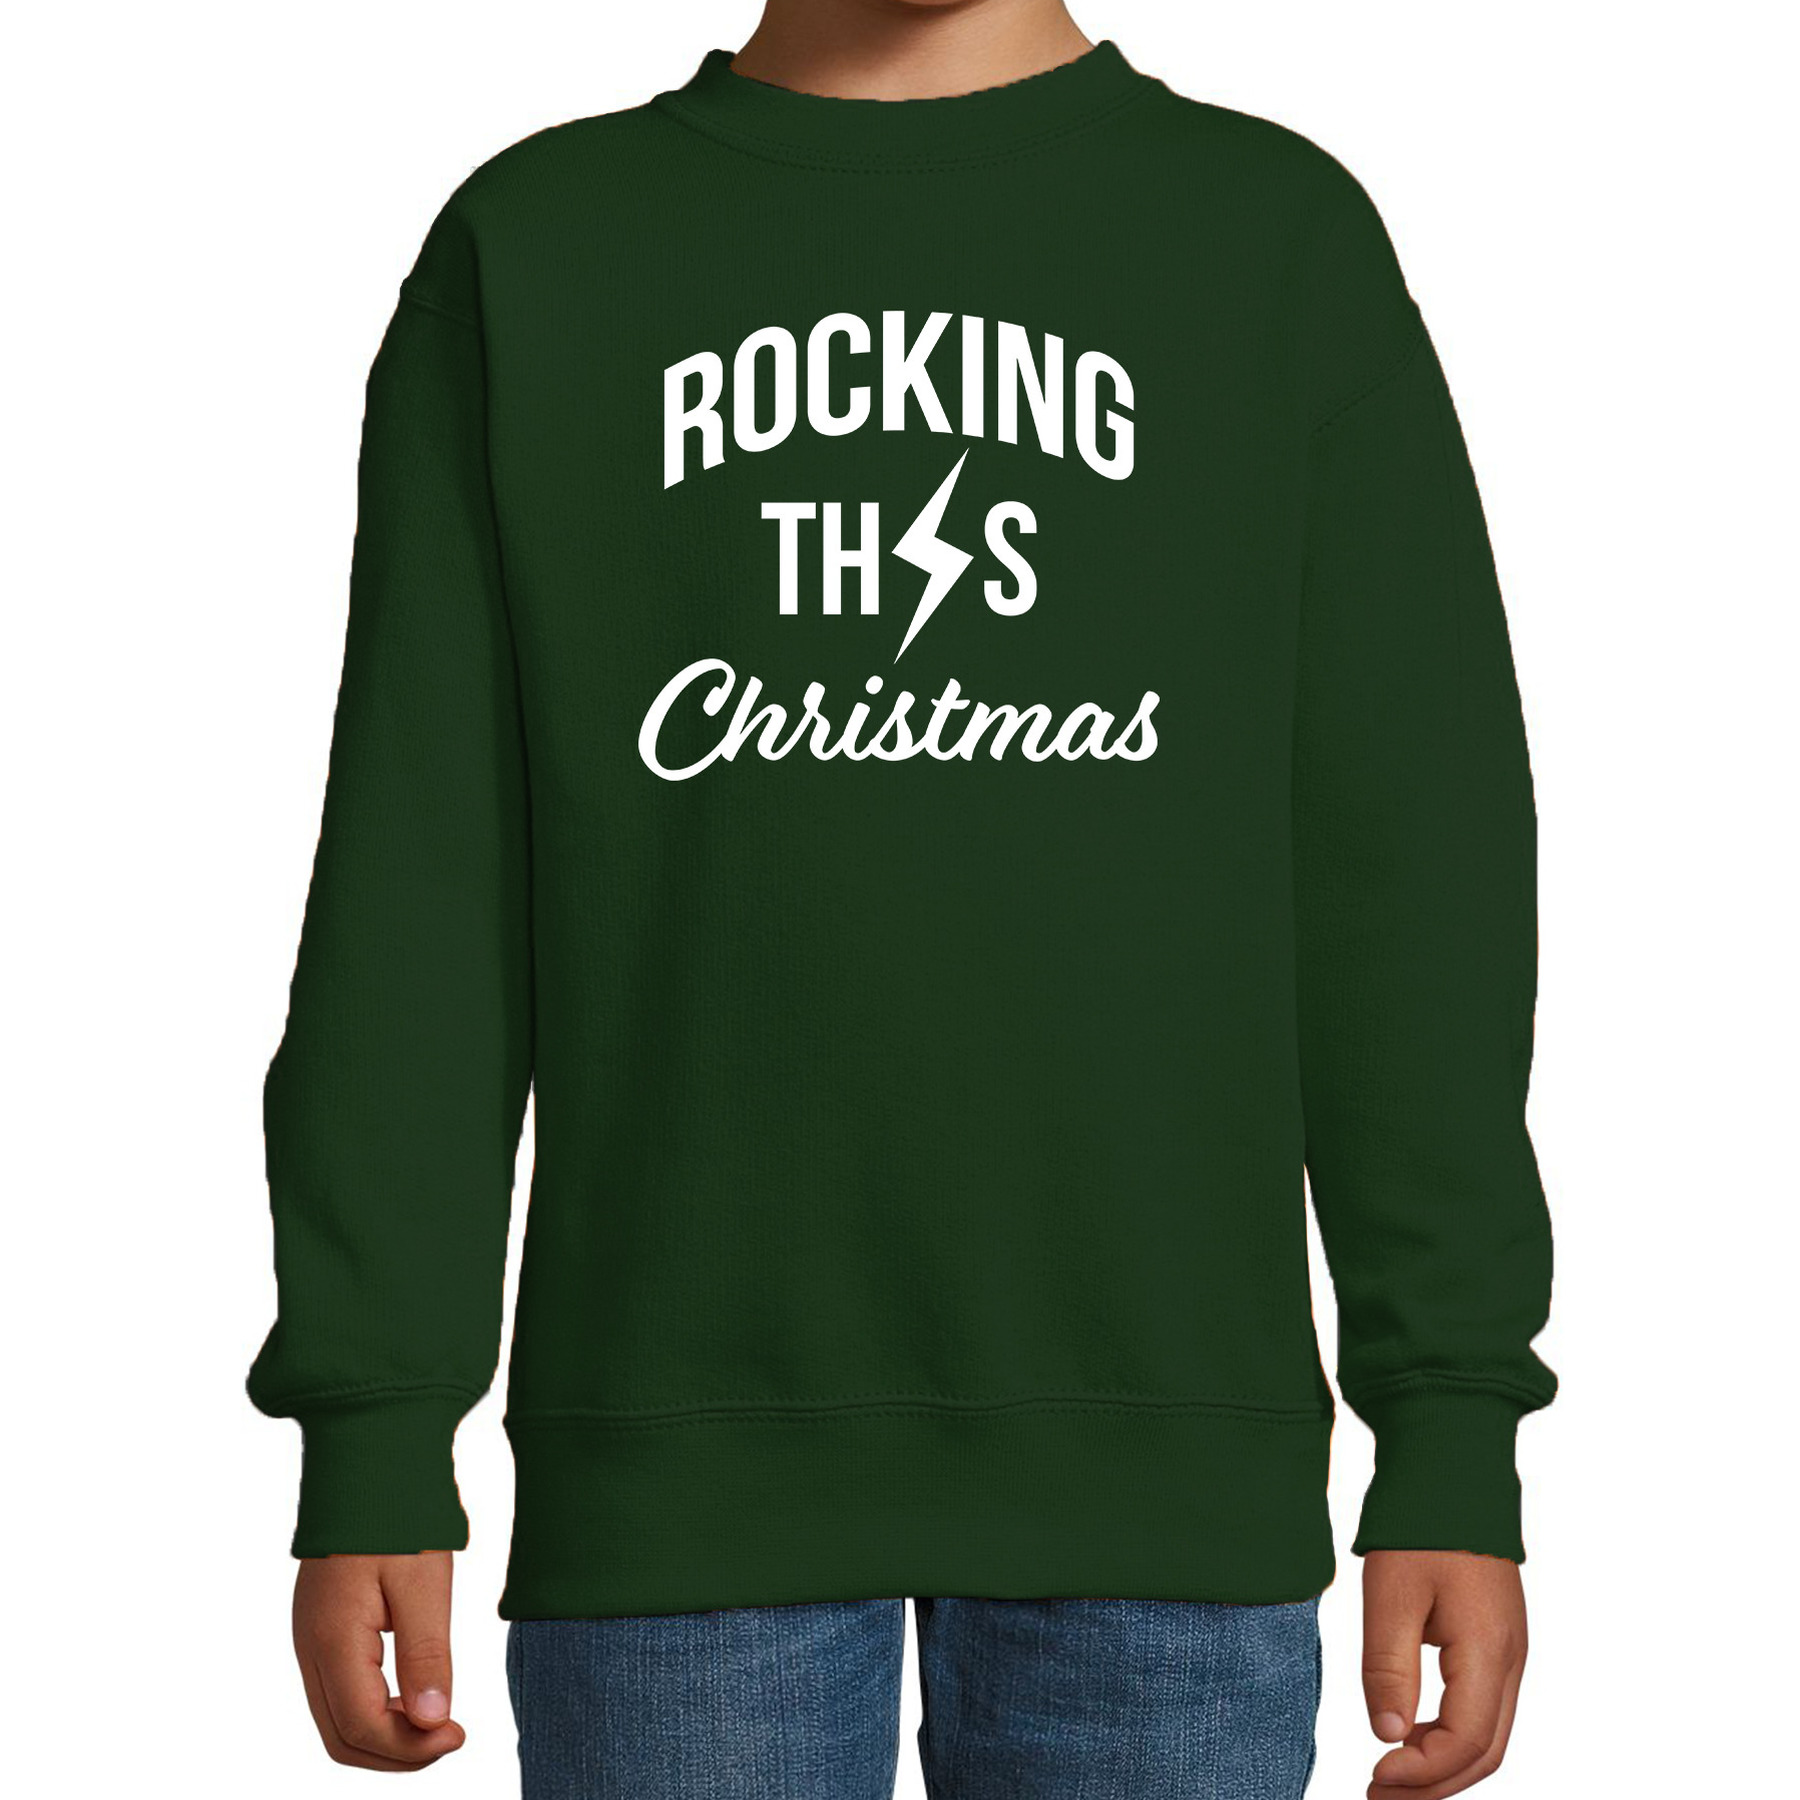 Rocking this Christmas foute Kerstsweater-Kersttrui groen voor kinderen